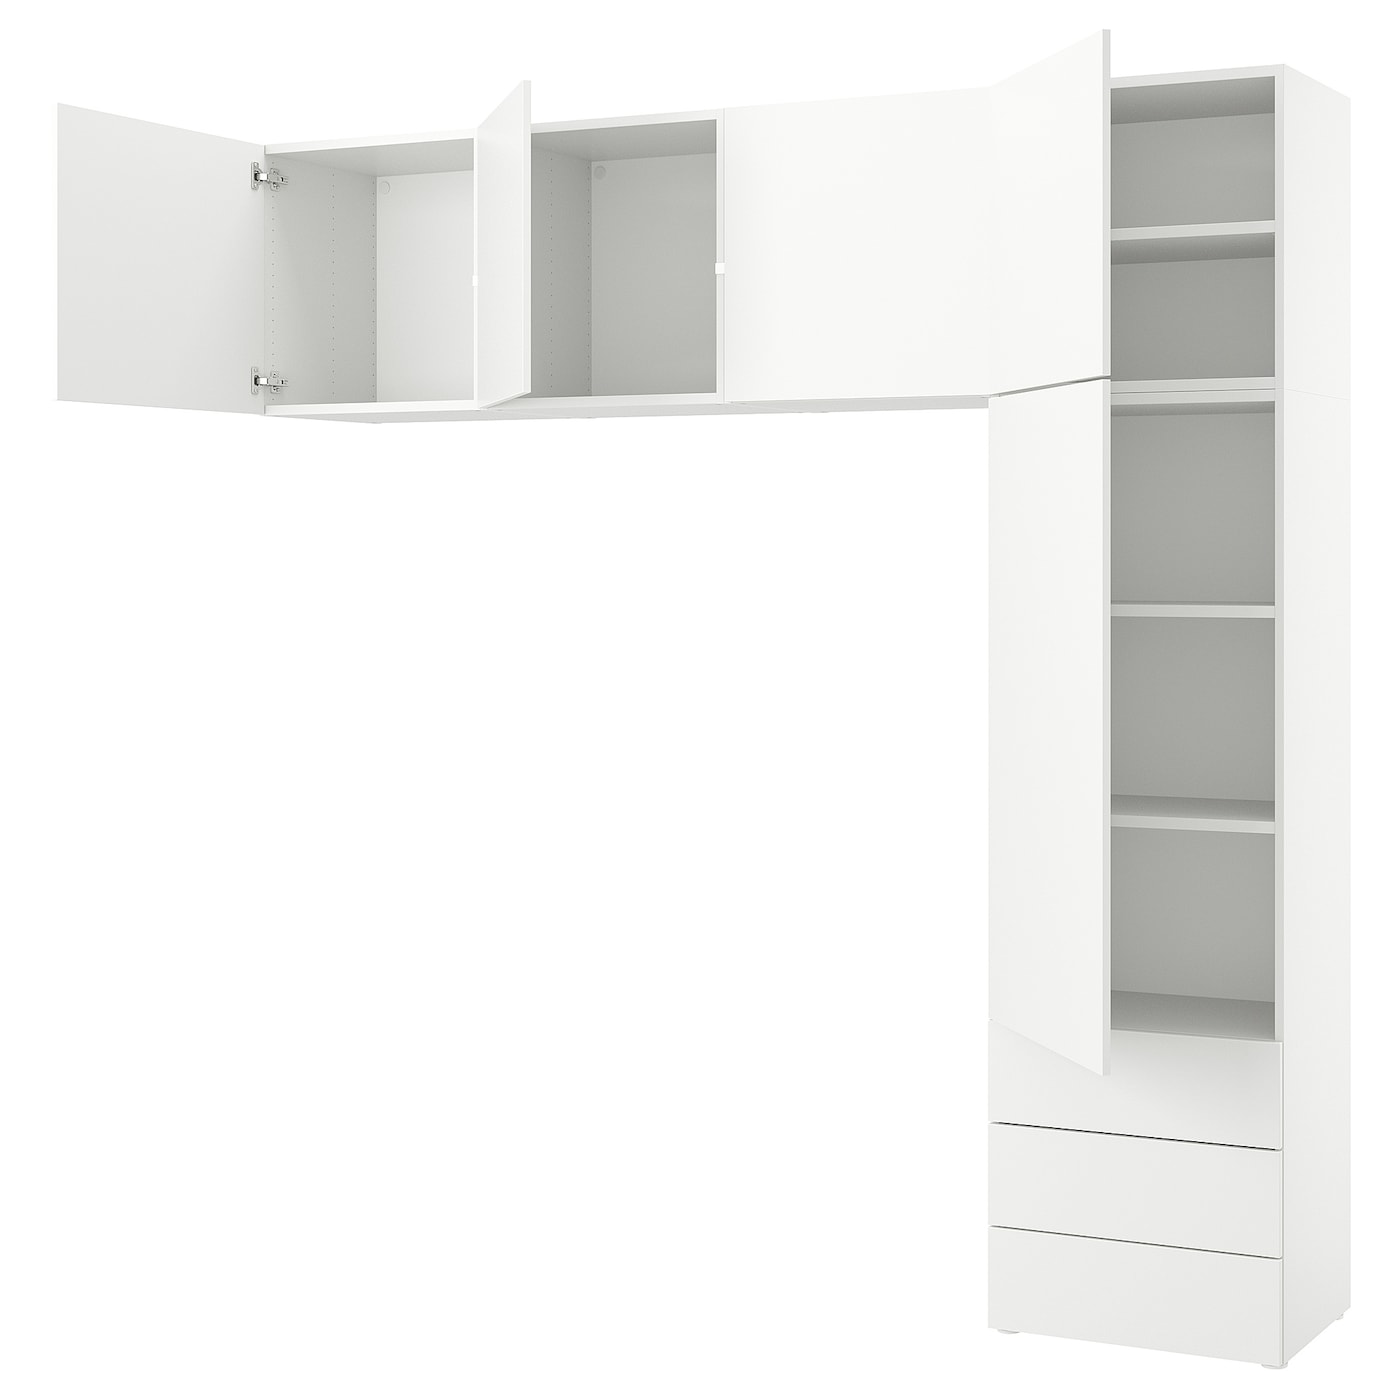 Платяной шкаф - PLATSA/IKEA/ ПЛАТСА ИКЕА,240x42x241 см, белый